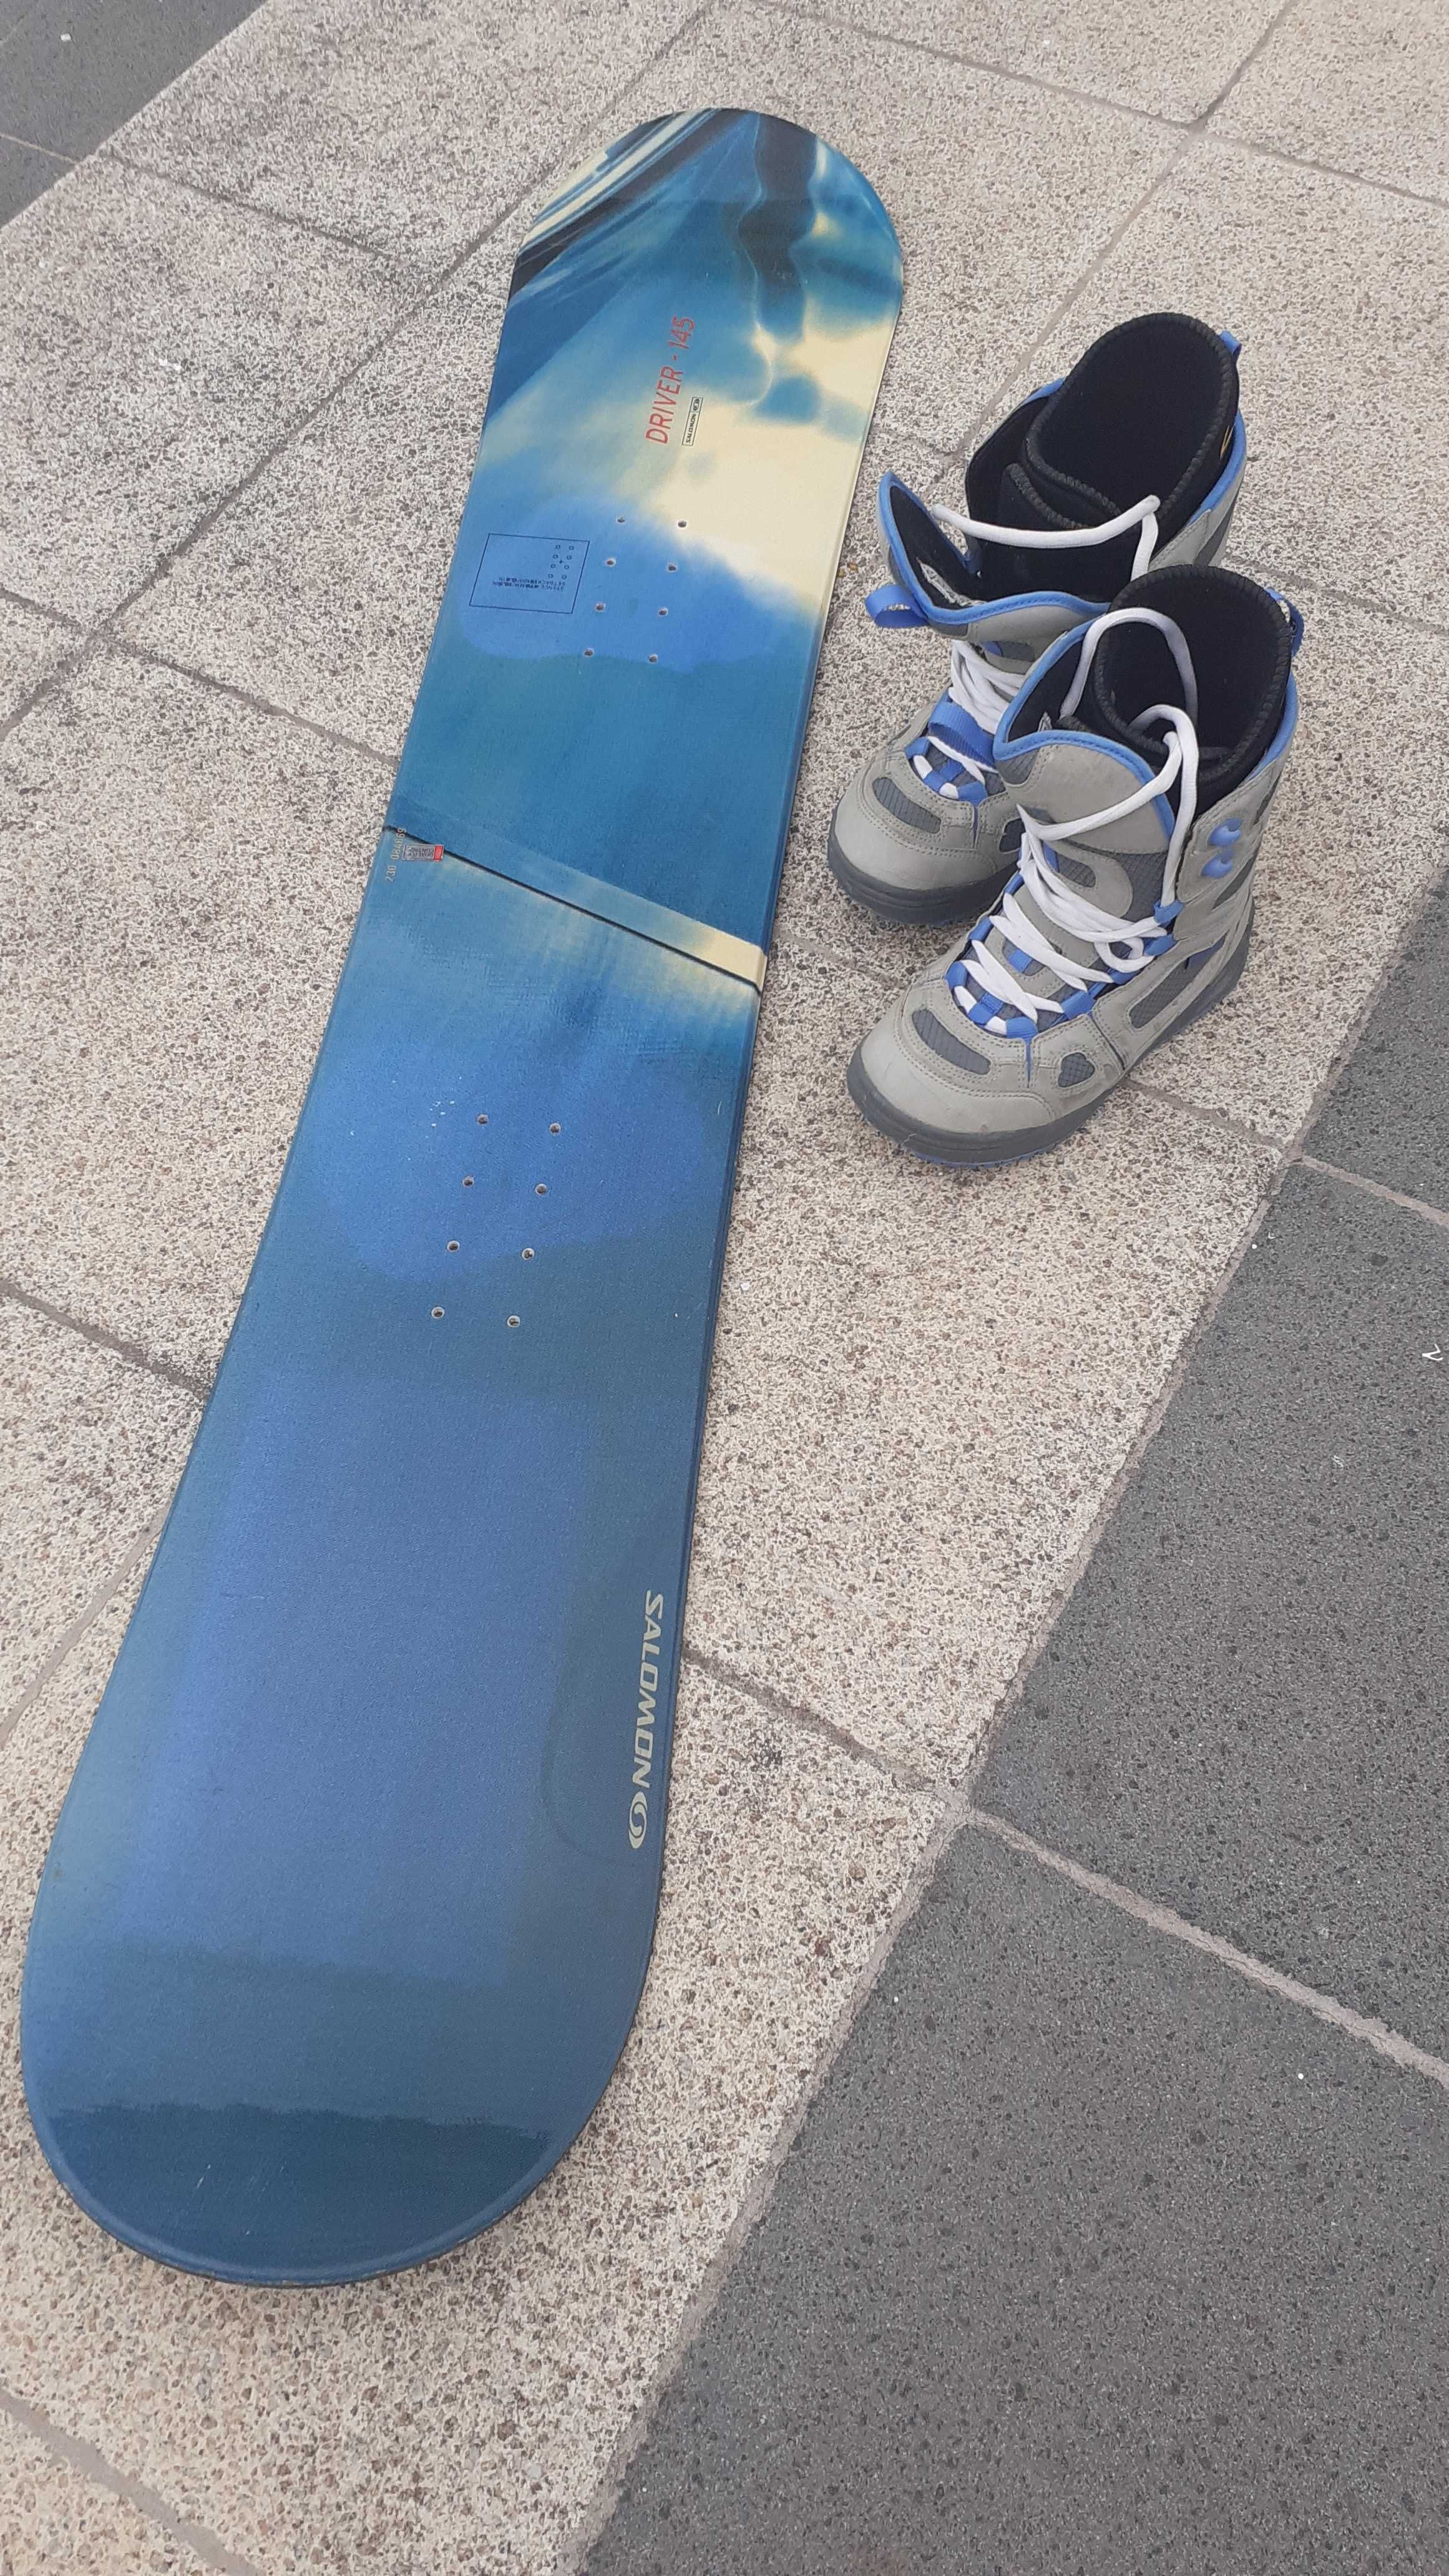 snowboard 145 cm e botas tamanho 35